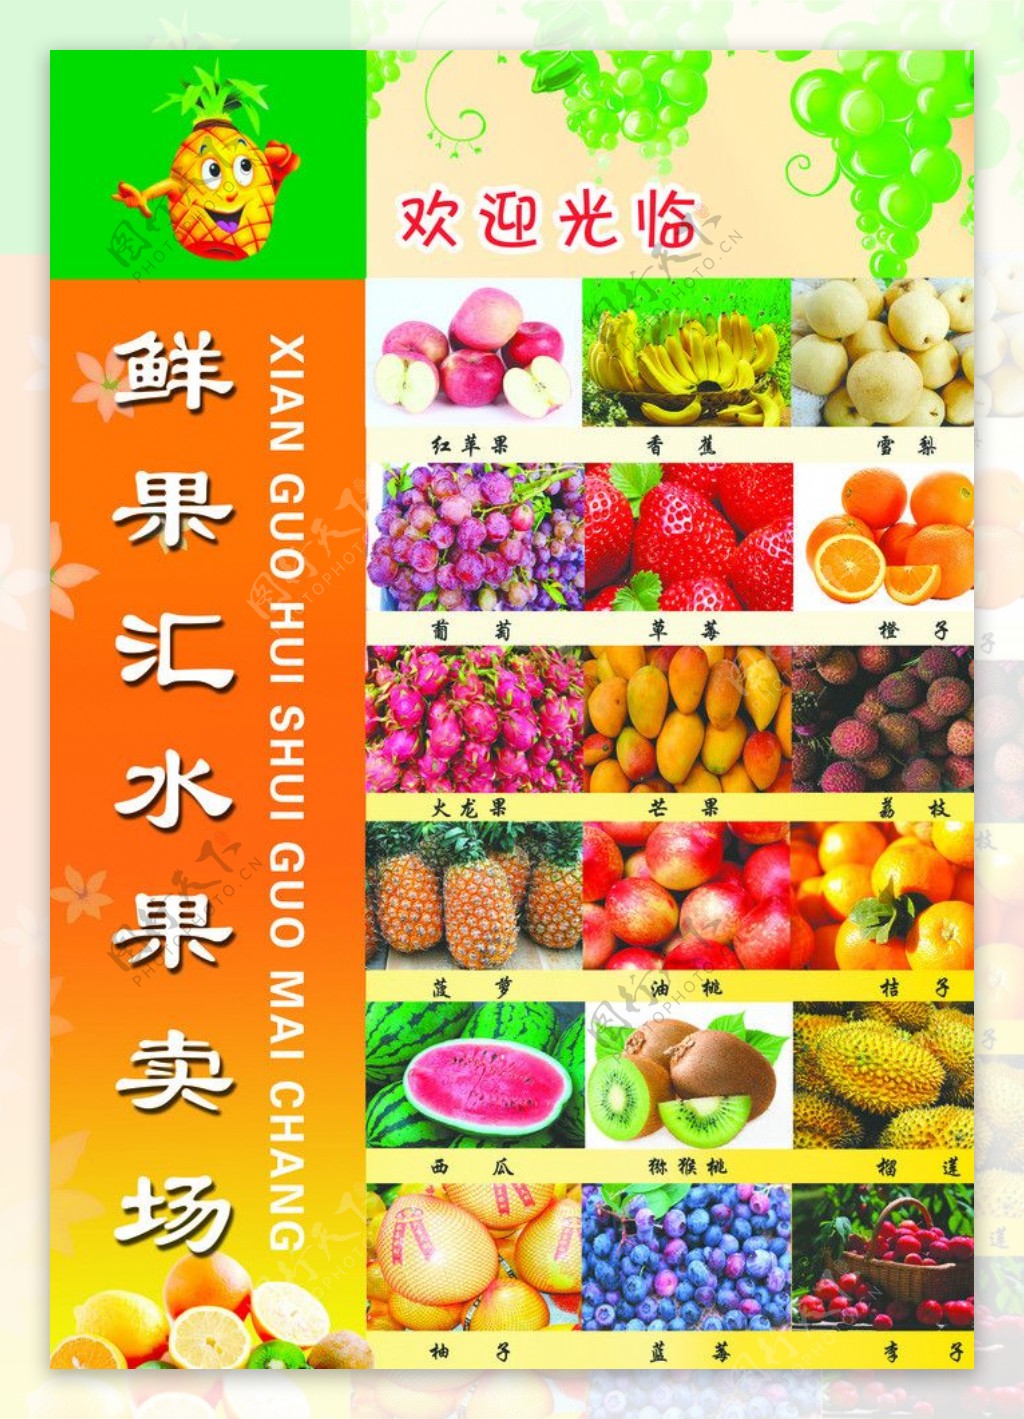 鲜果汇水果卖场宣传单图片